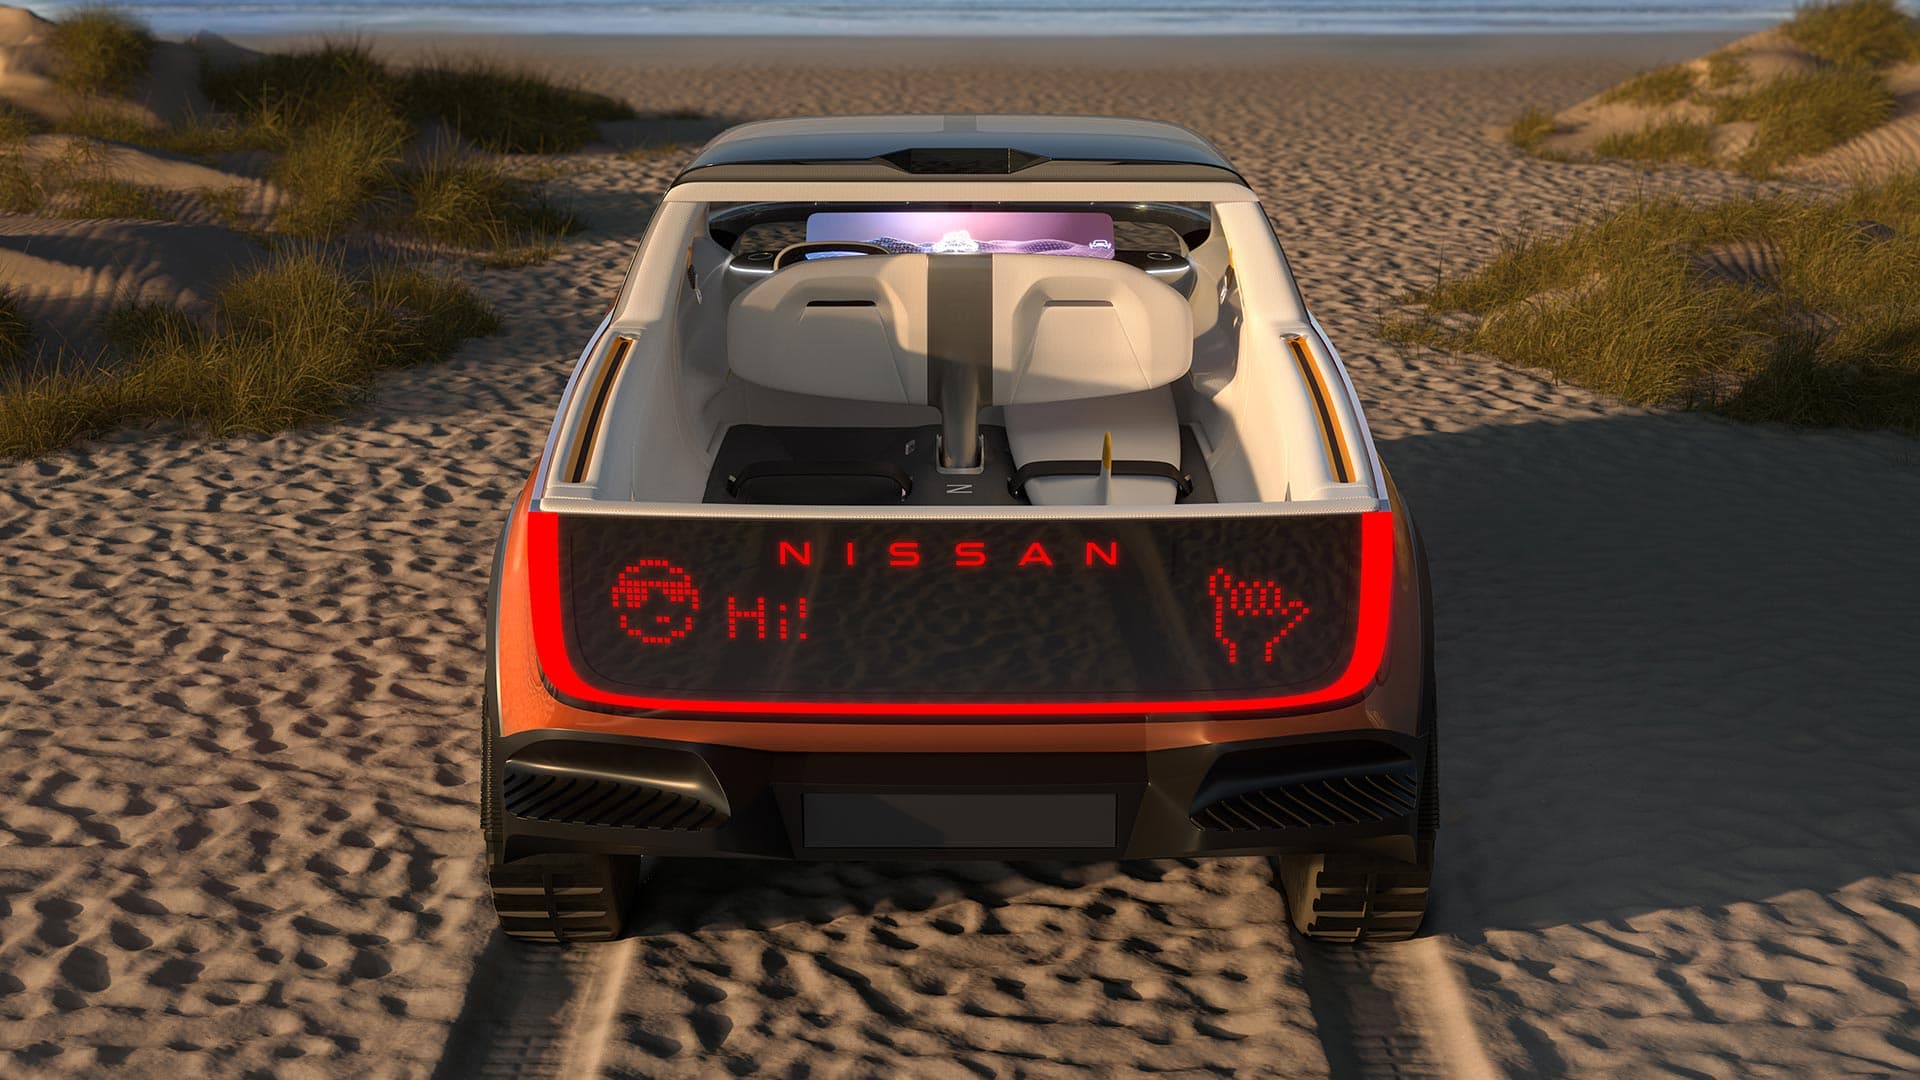 NISSAN SURF-OUT Concept Car Image